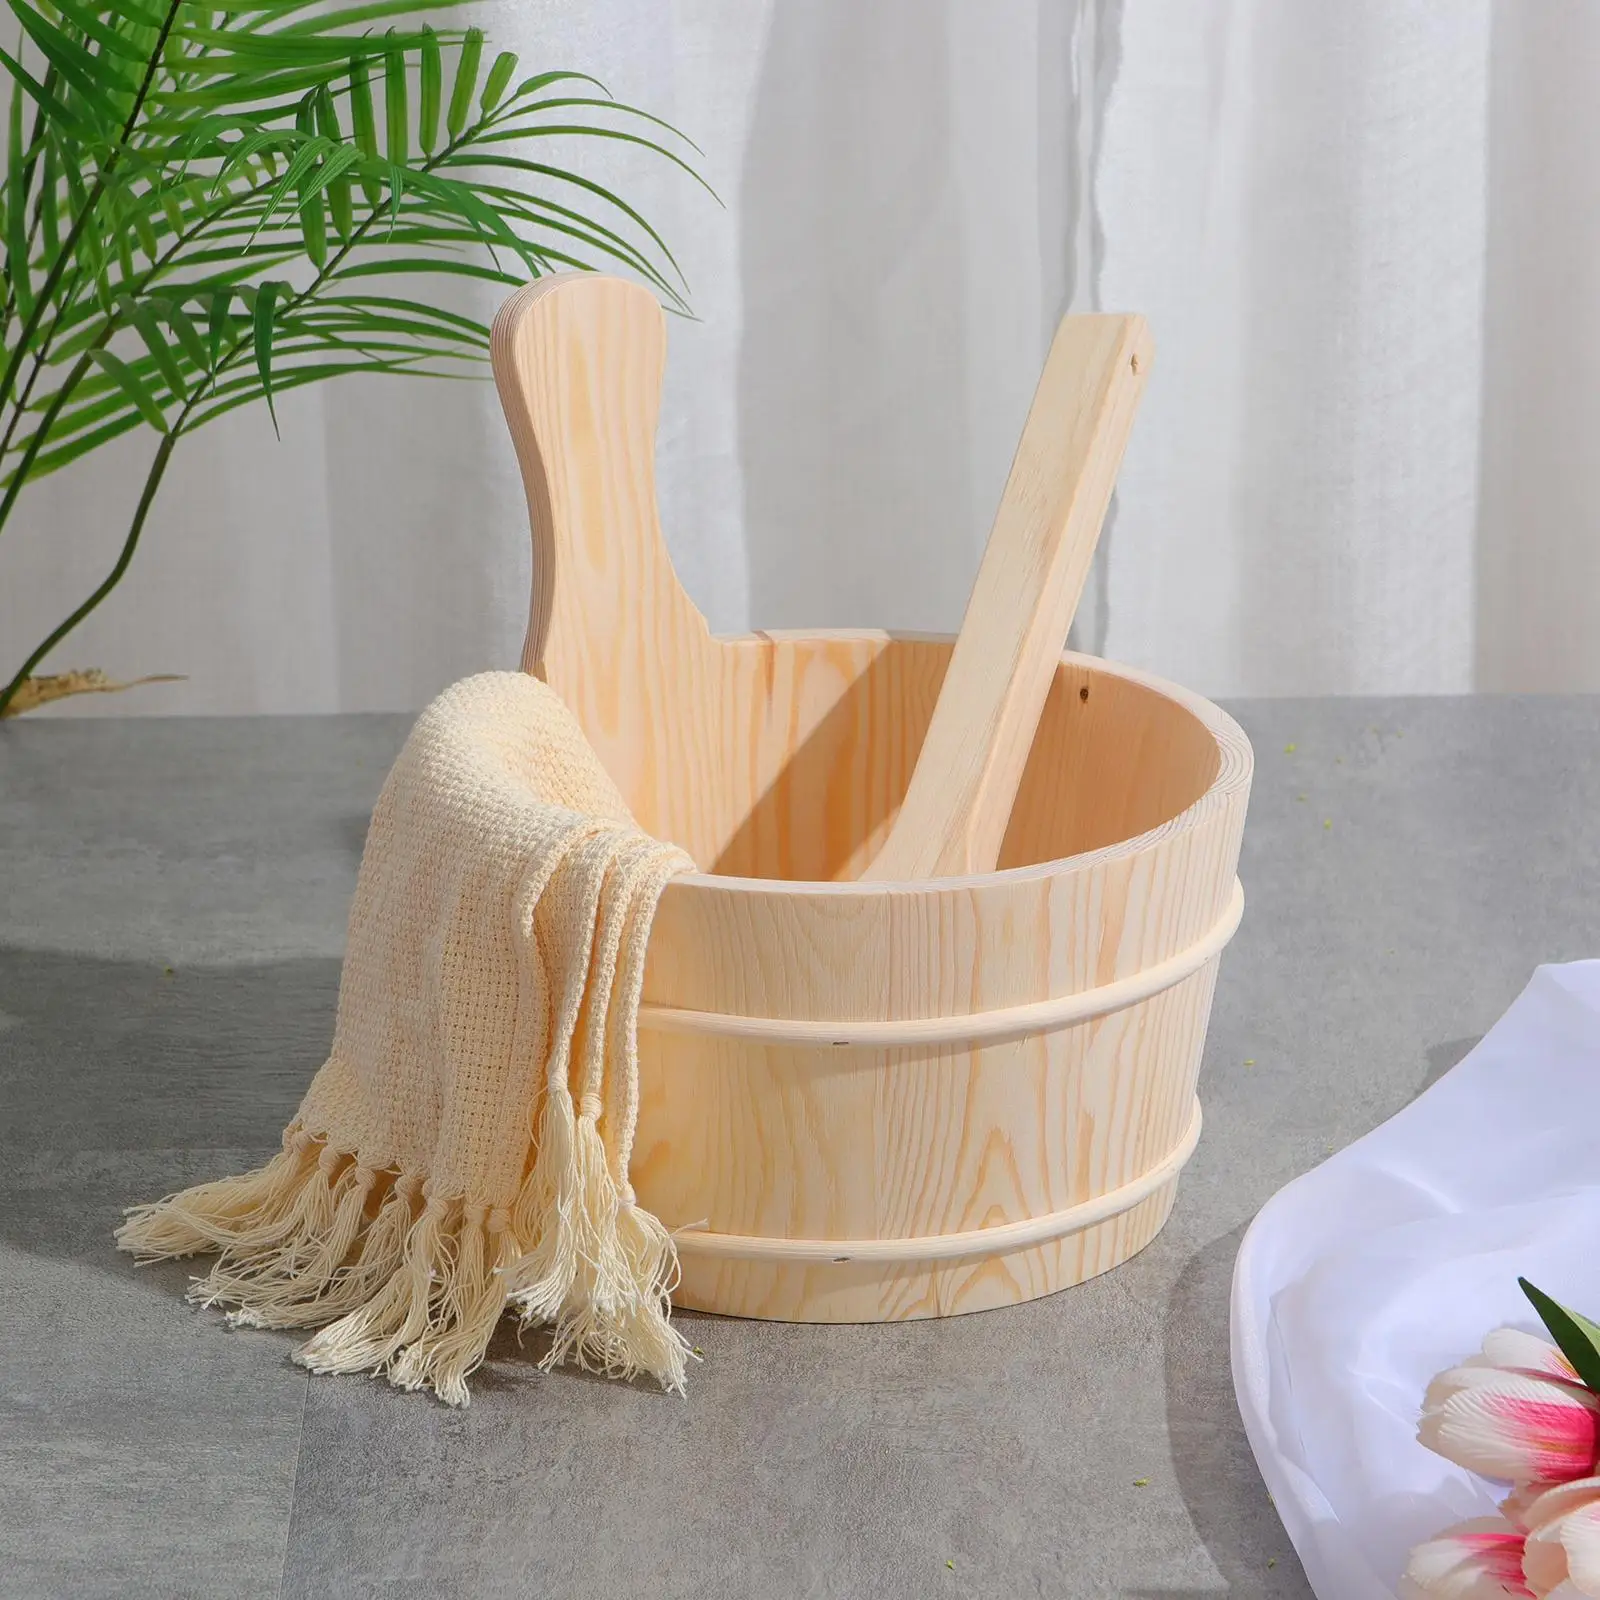 Sauna Bucket Set Solid Wood with Laddle Plastic Liner 4 Liter 1 Gallon Shower er Sauna ing for   Use Bath Shower